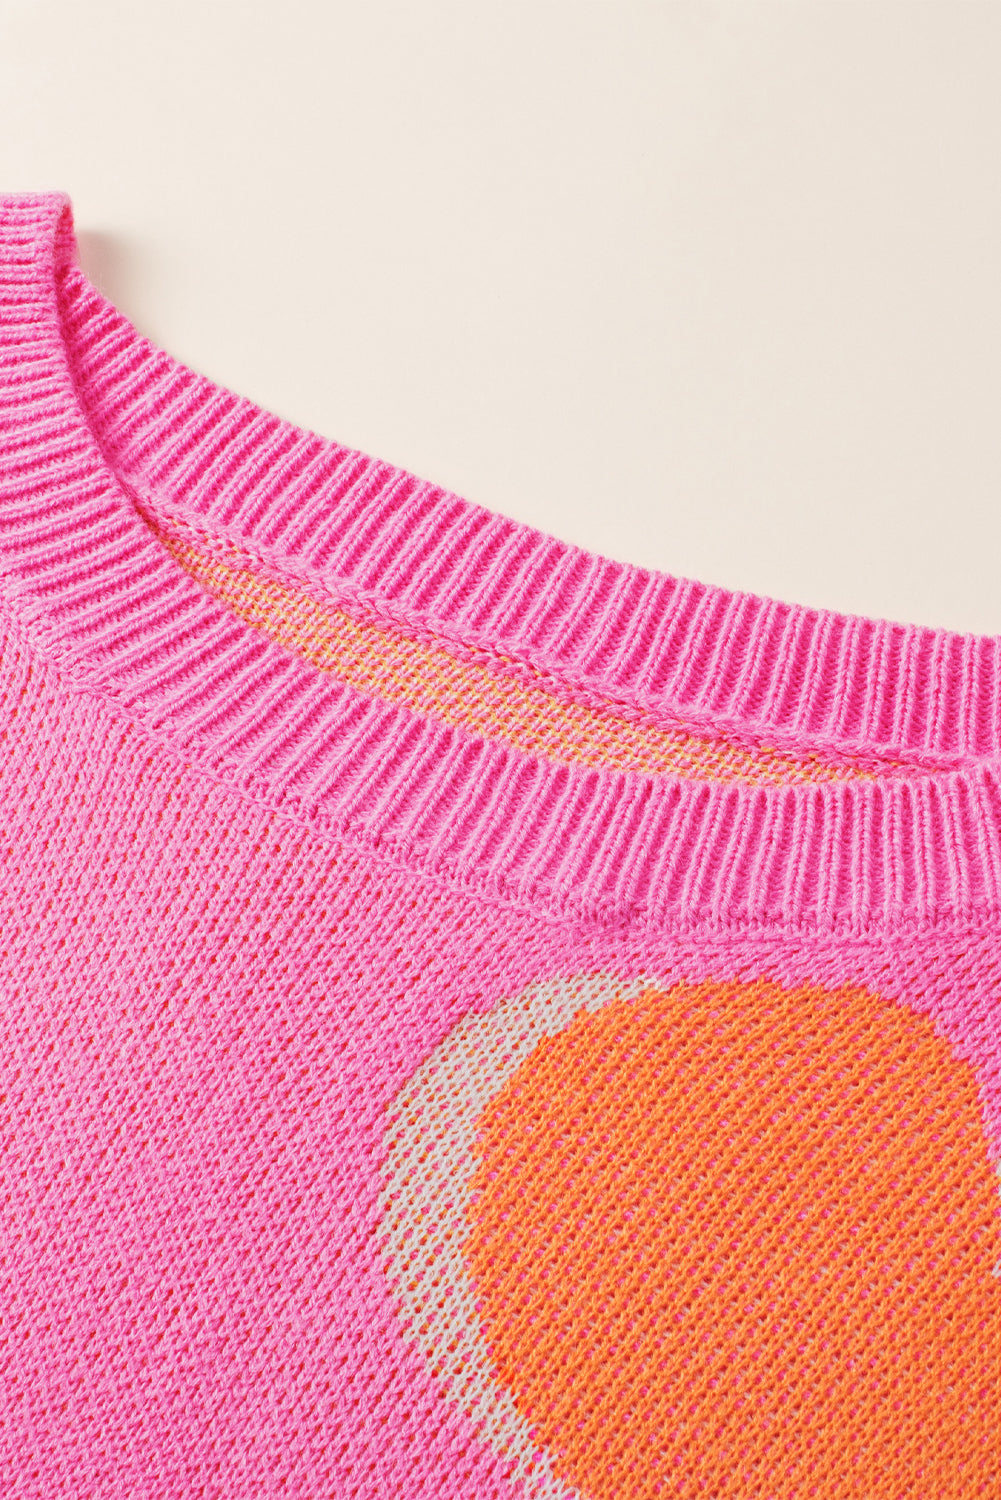 Bonbon pulover s cvjetnim uzorkom veće veličine na spuštena ramena